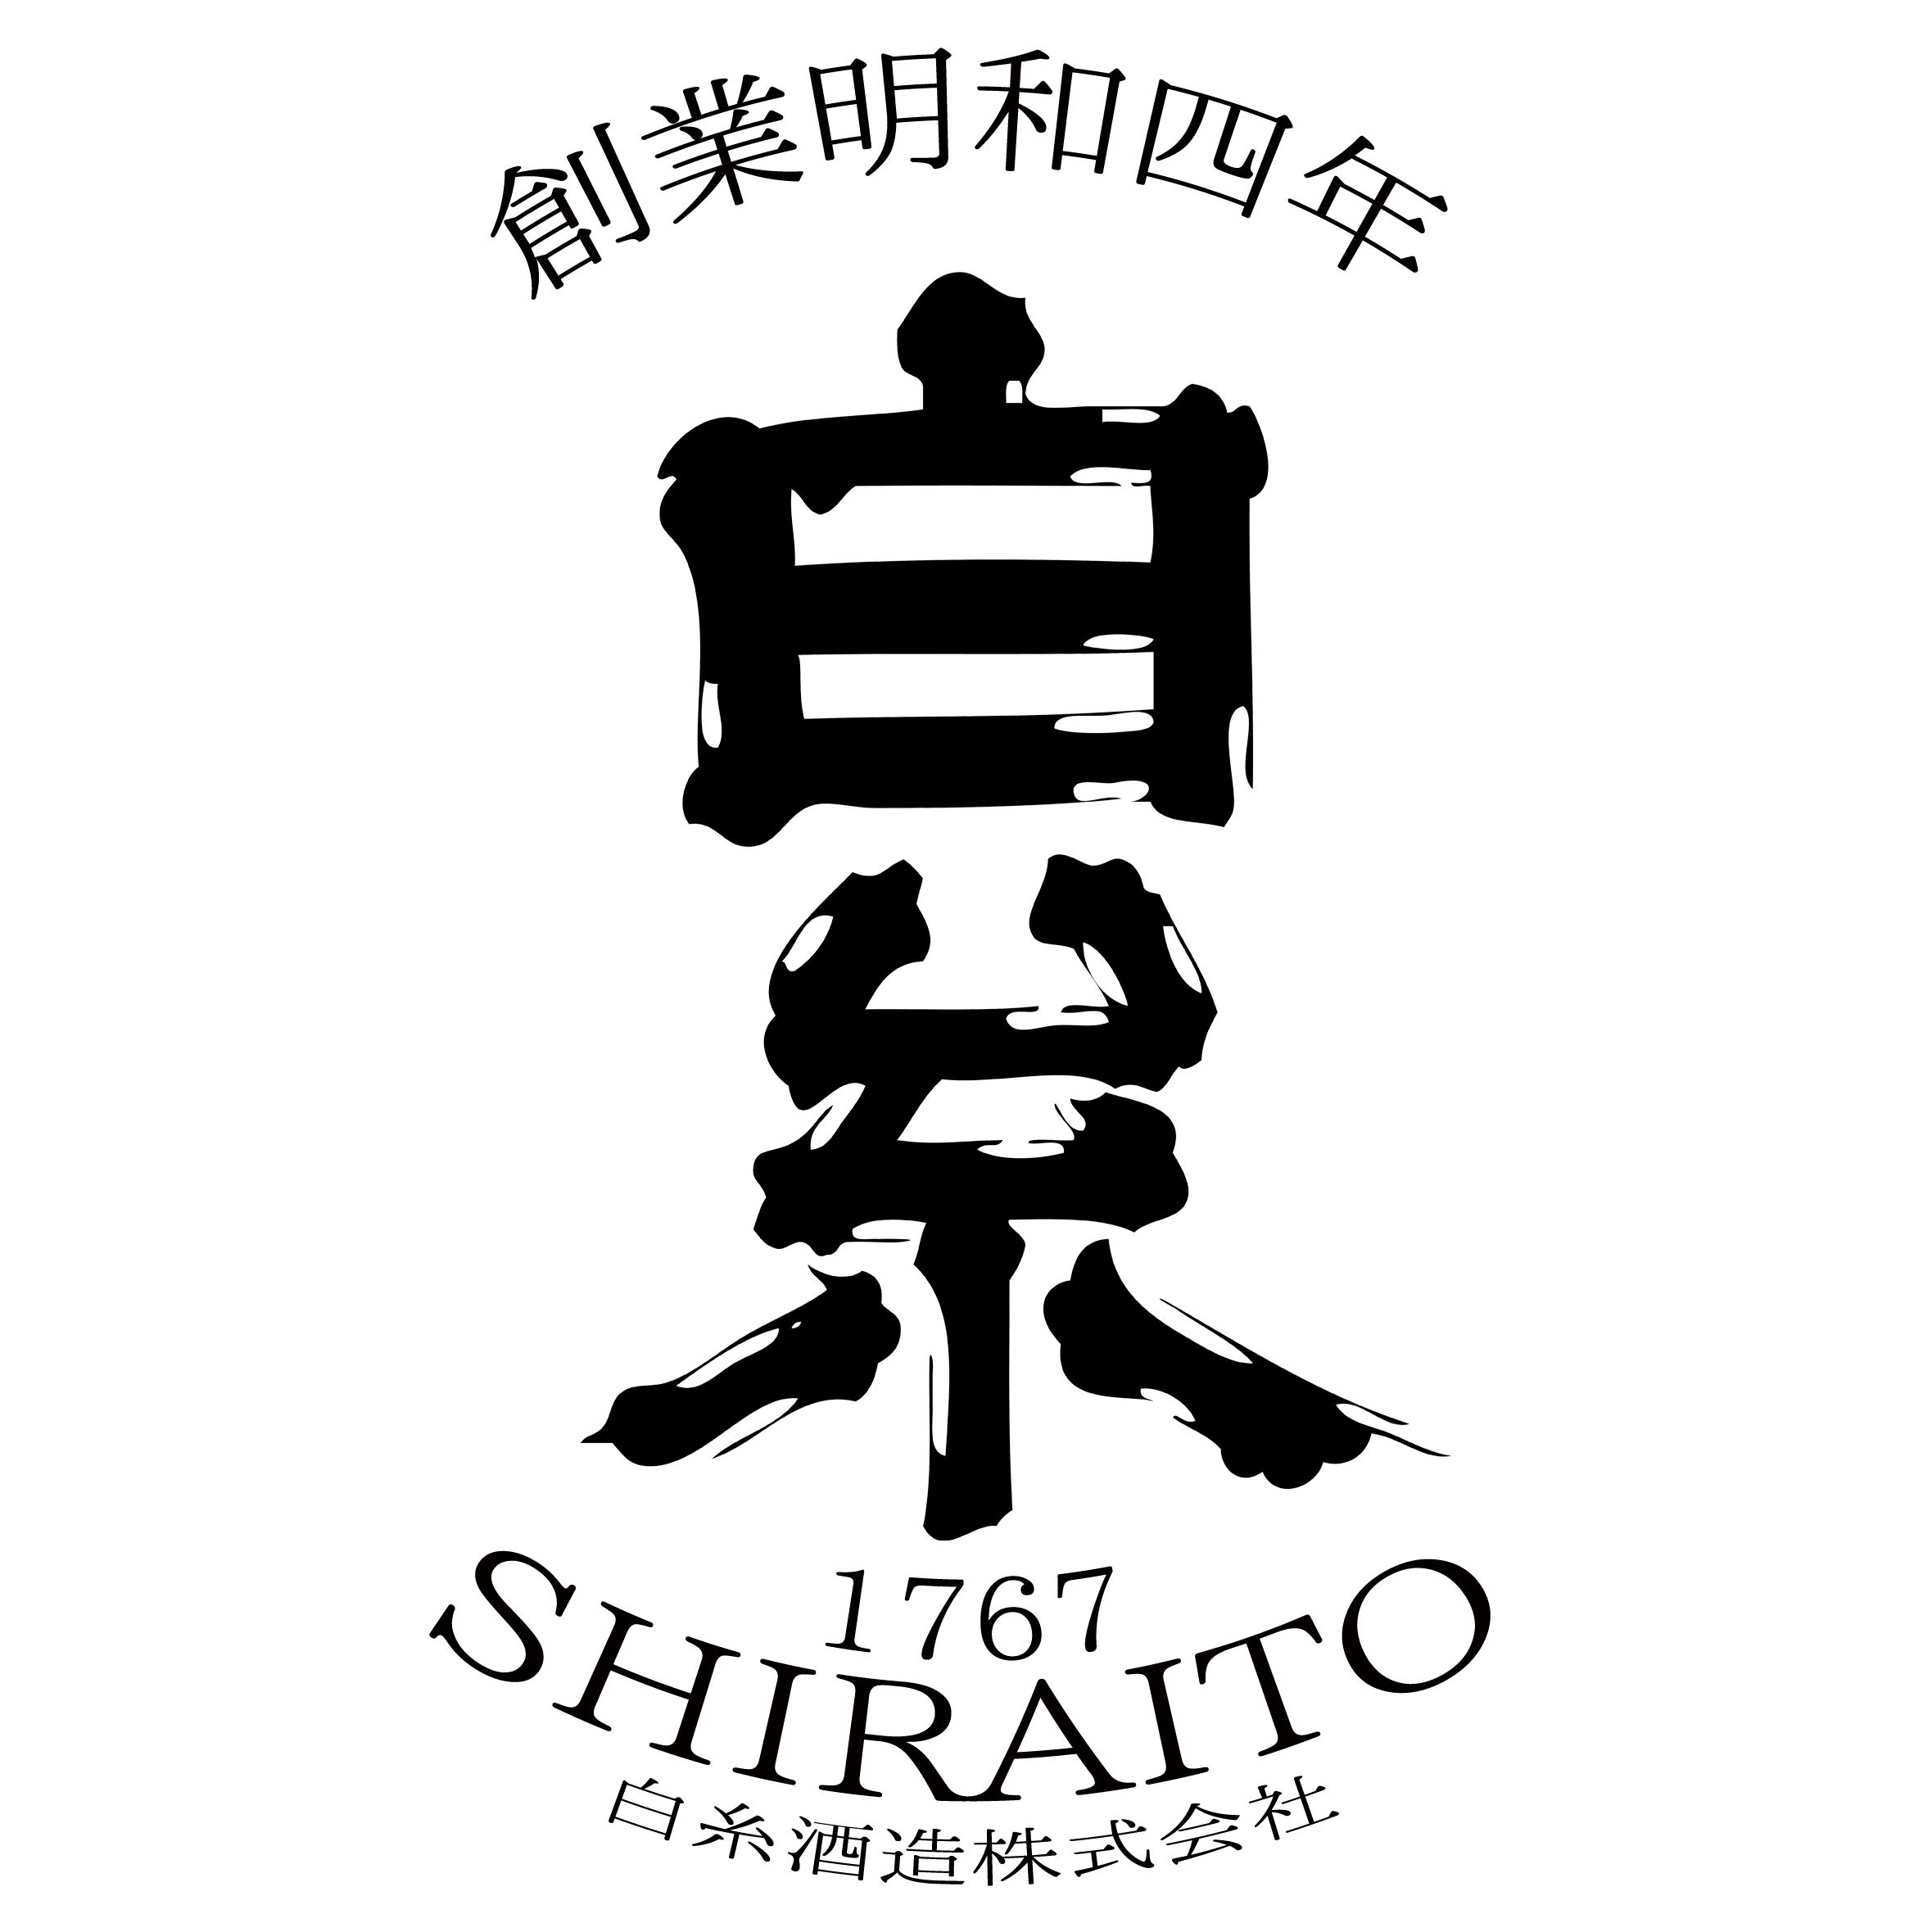 Shiraito Sake Logo